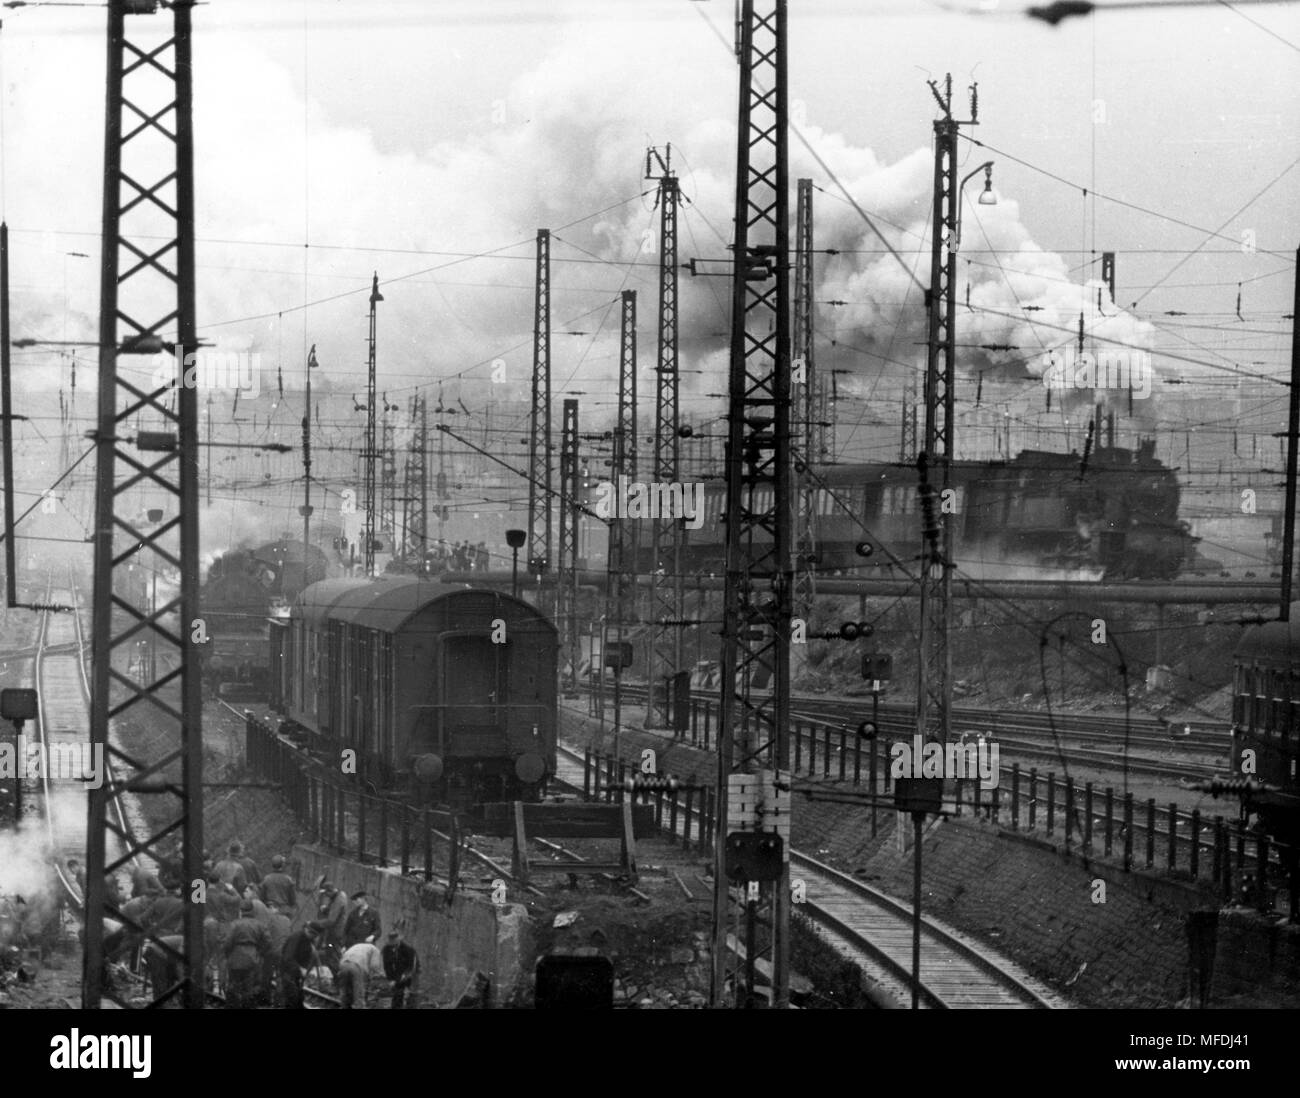 Ein Wald von Masten wurde empfangen von Zügen in dem Frankfurter  Hauptbahnhof für einige Zeit. Bild im November 1957 getroffen. Das  Labyrinth der Masten, die für den Laien unverständlich scheint, ist ein